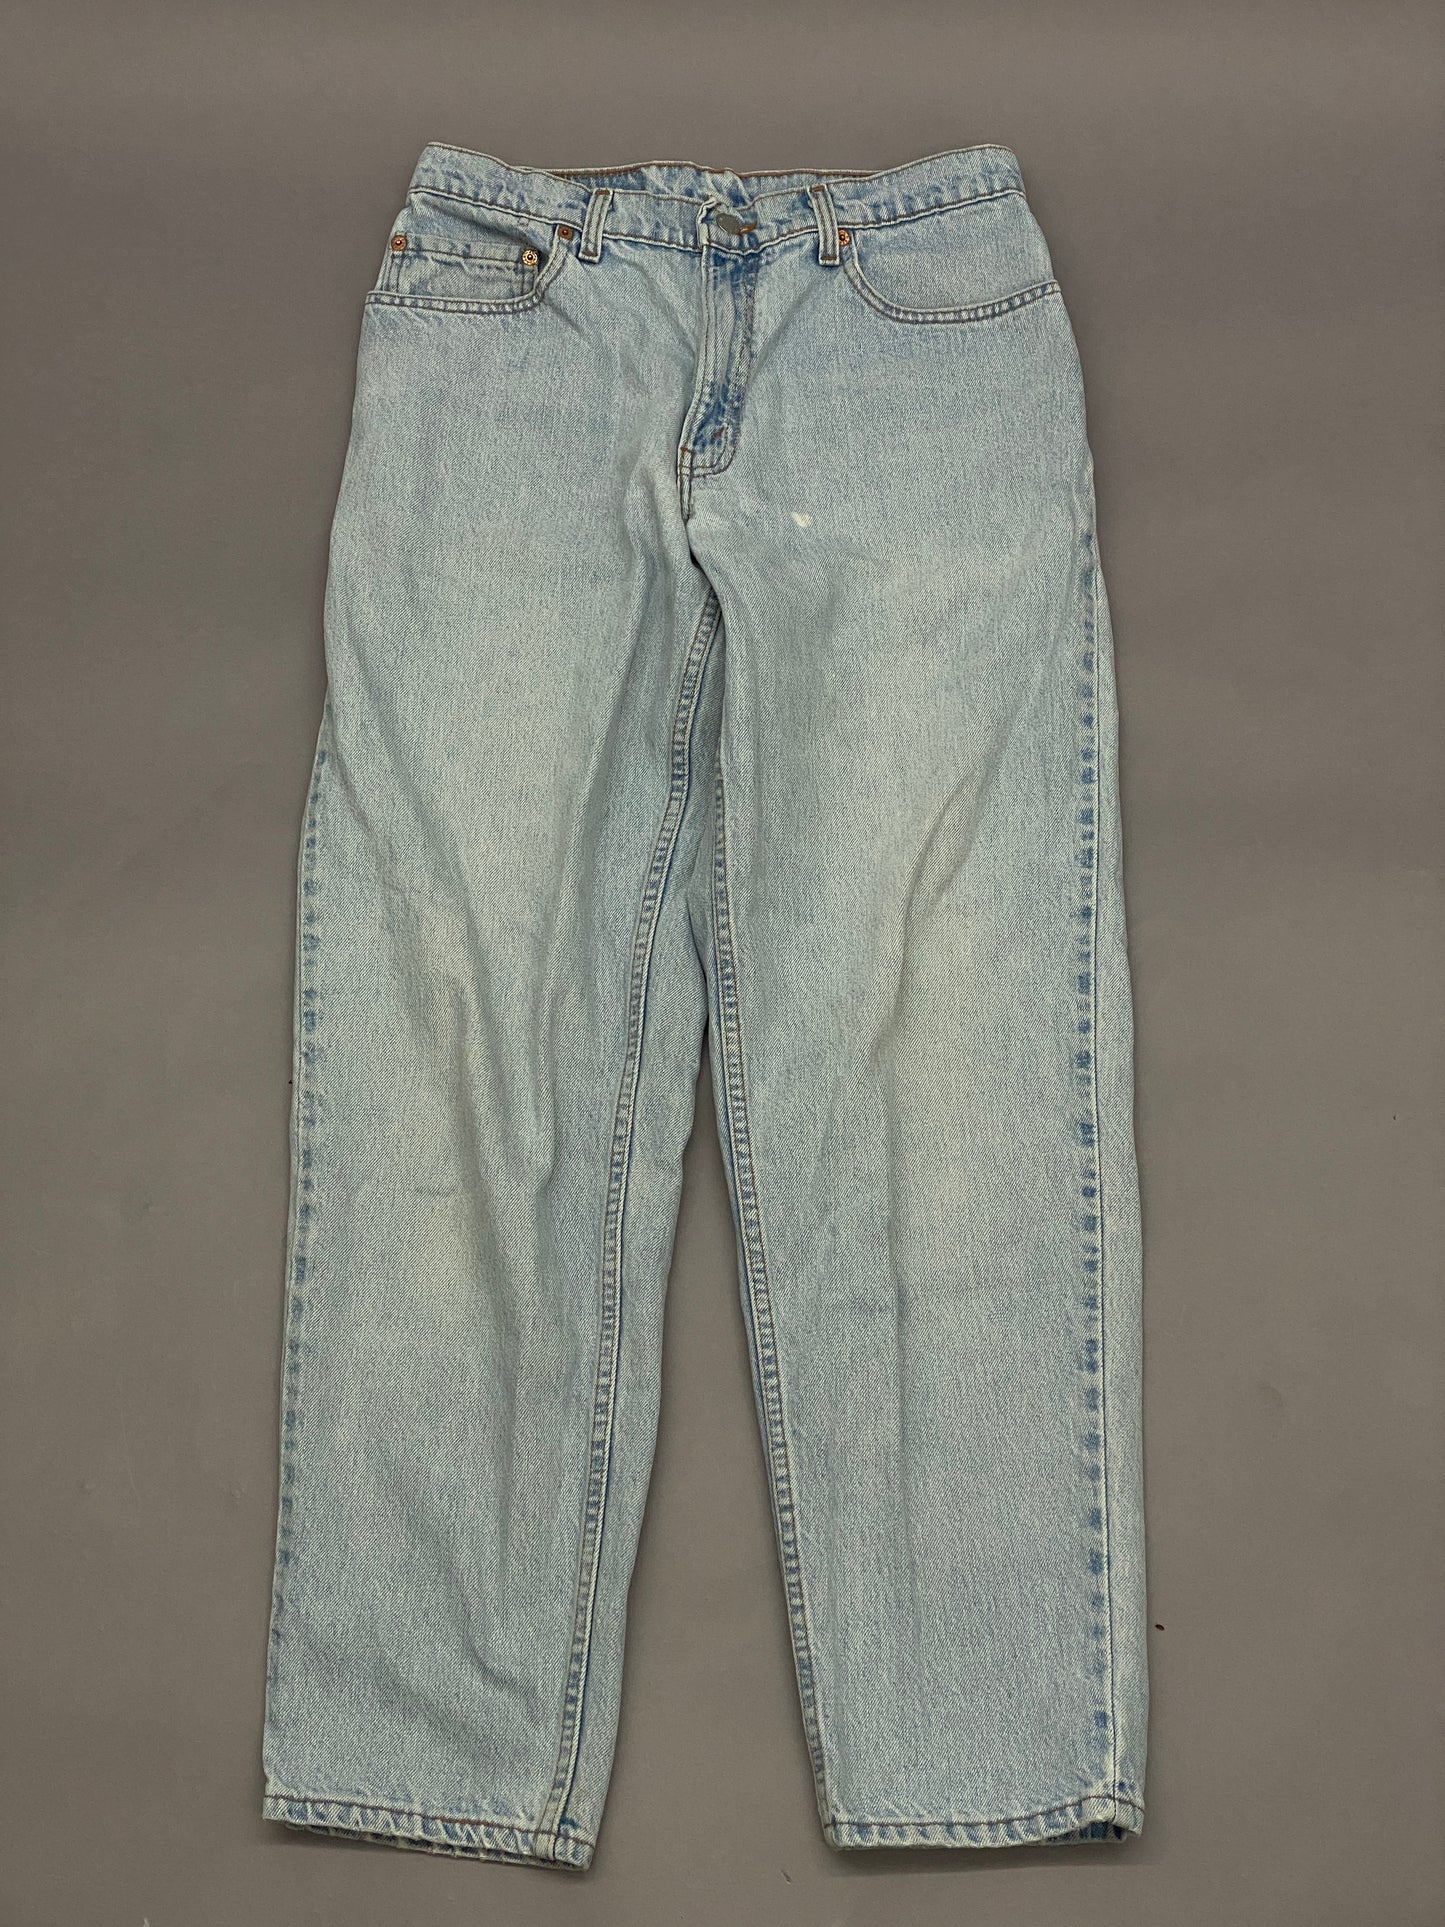 Levis 560 Vintage Blue Jeans - 32x32